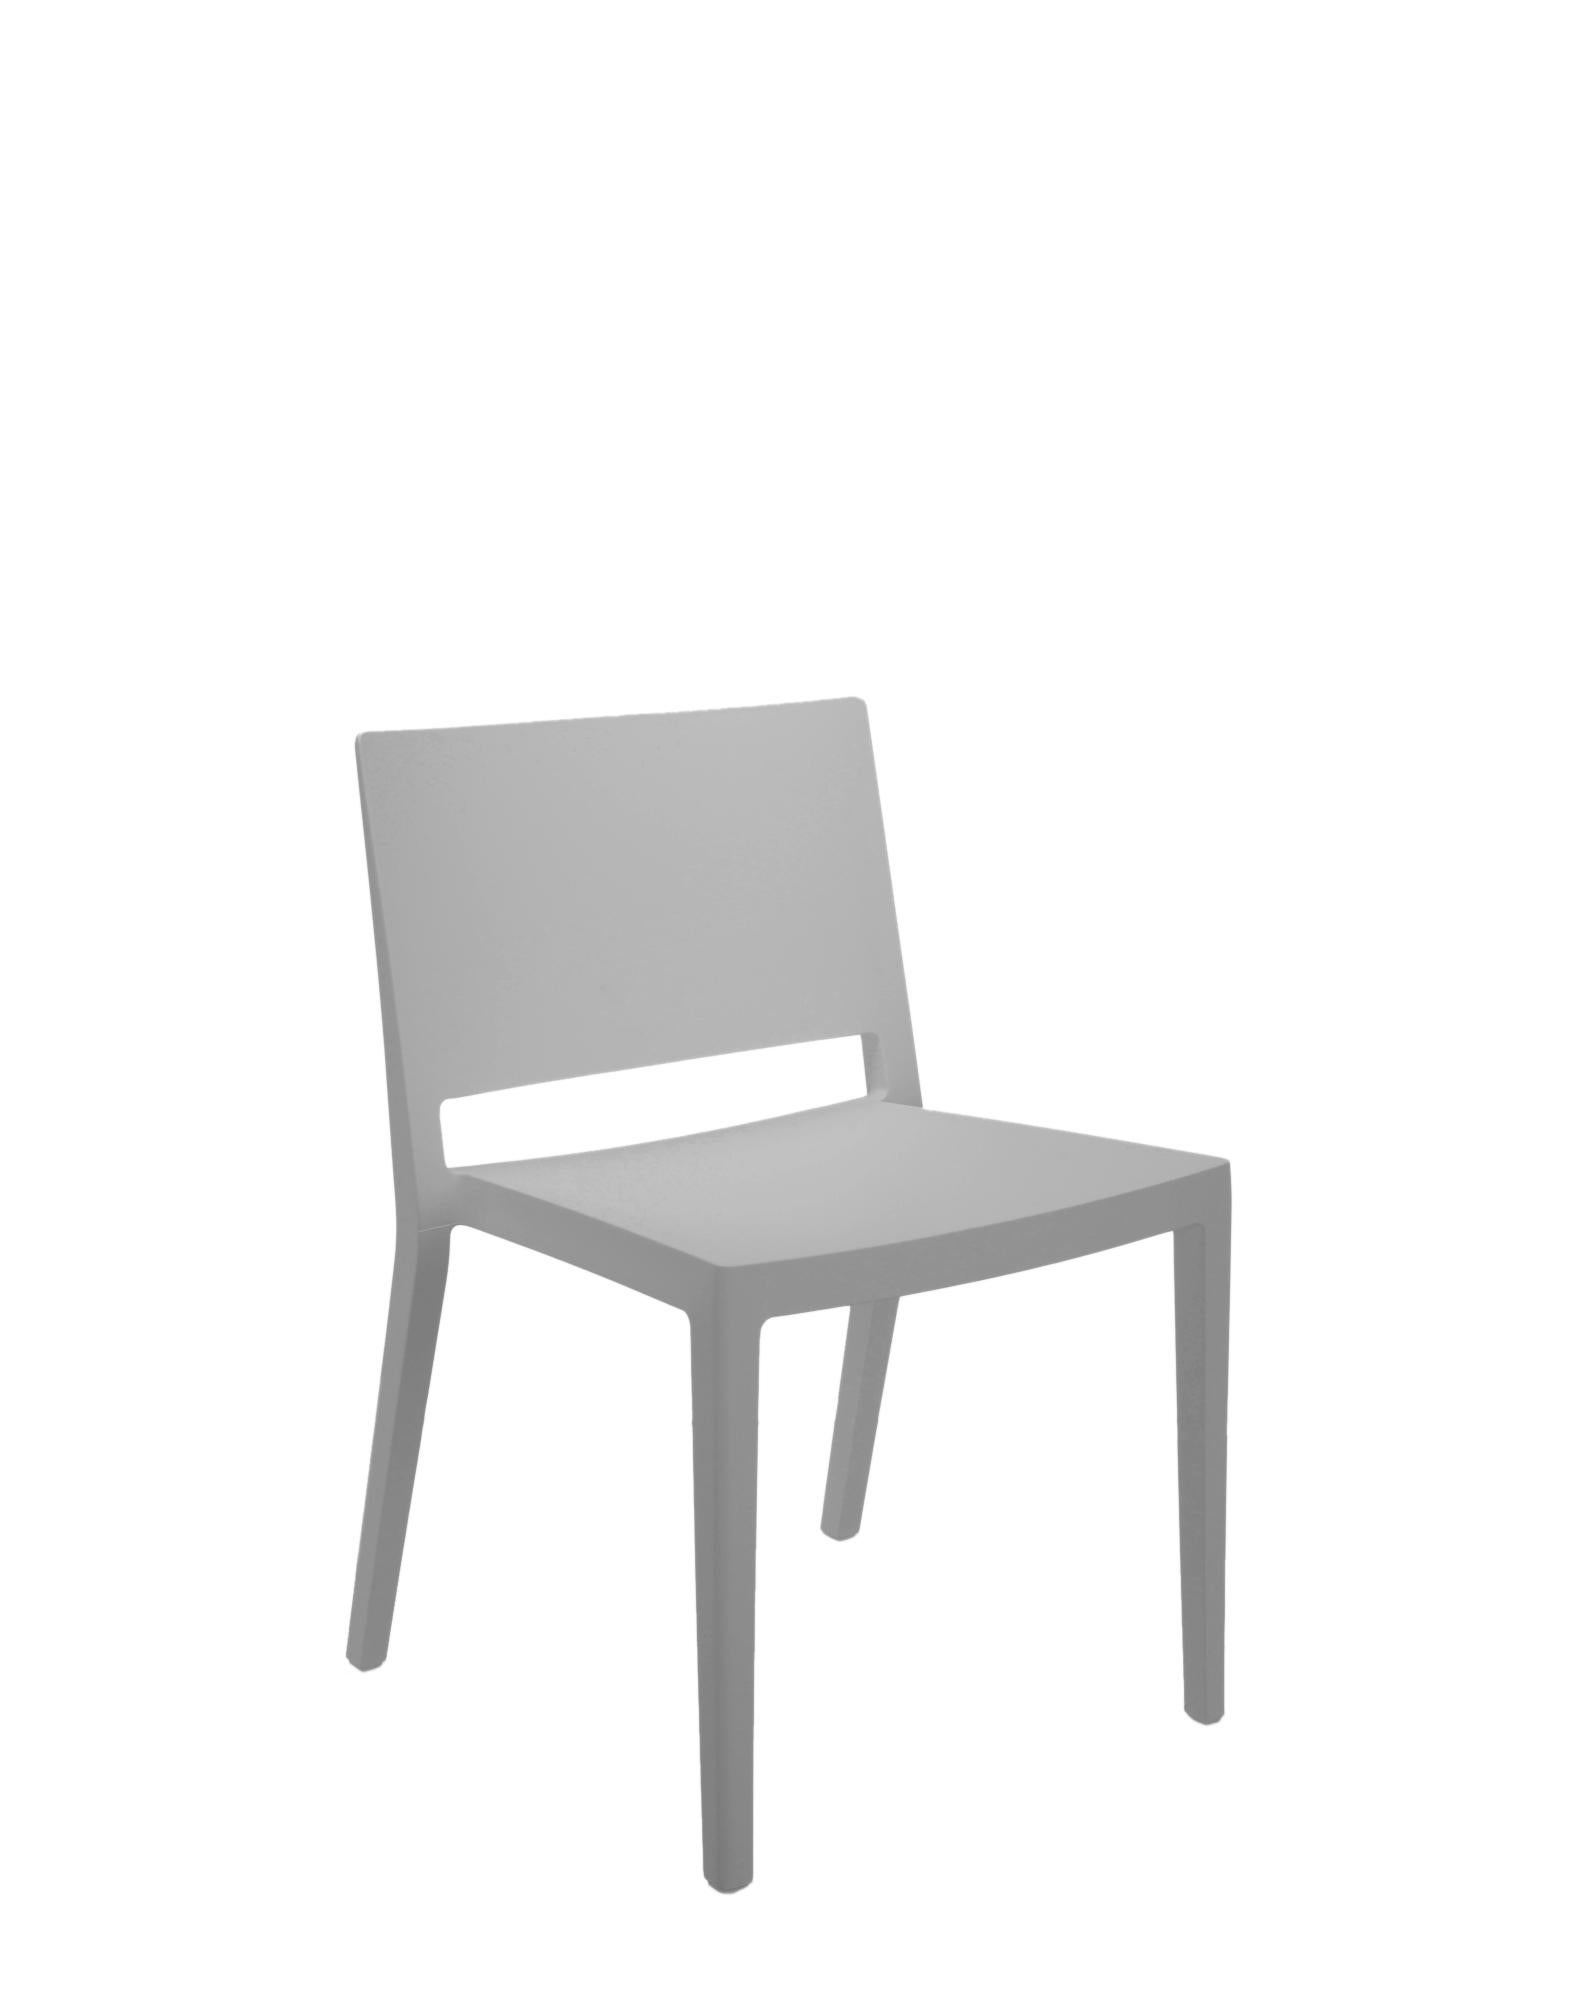 Une chaise légère, aux lignes essentielles et strictes, en phase avec le style minimaliste et raffiné de son concepteur, Piero Lissoni. Lizz est désormais également disponible en version mate avec six couleurs, évocatrices du design scandinave